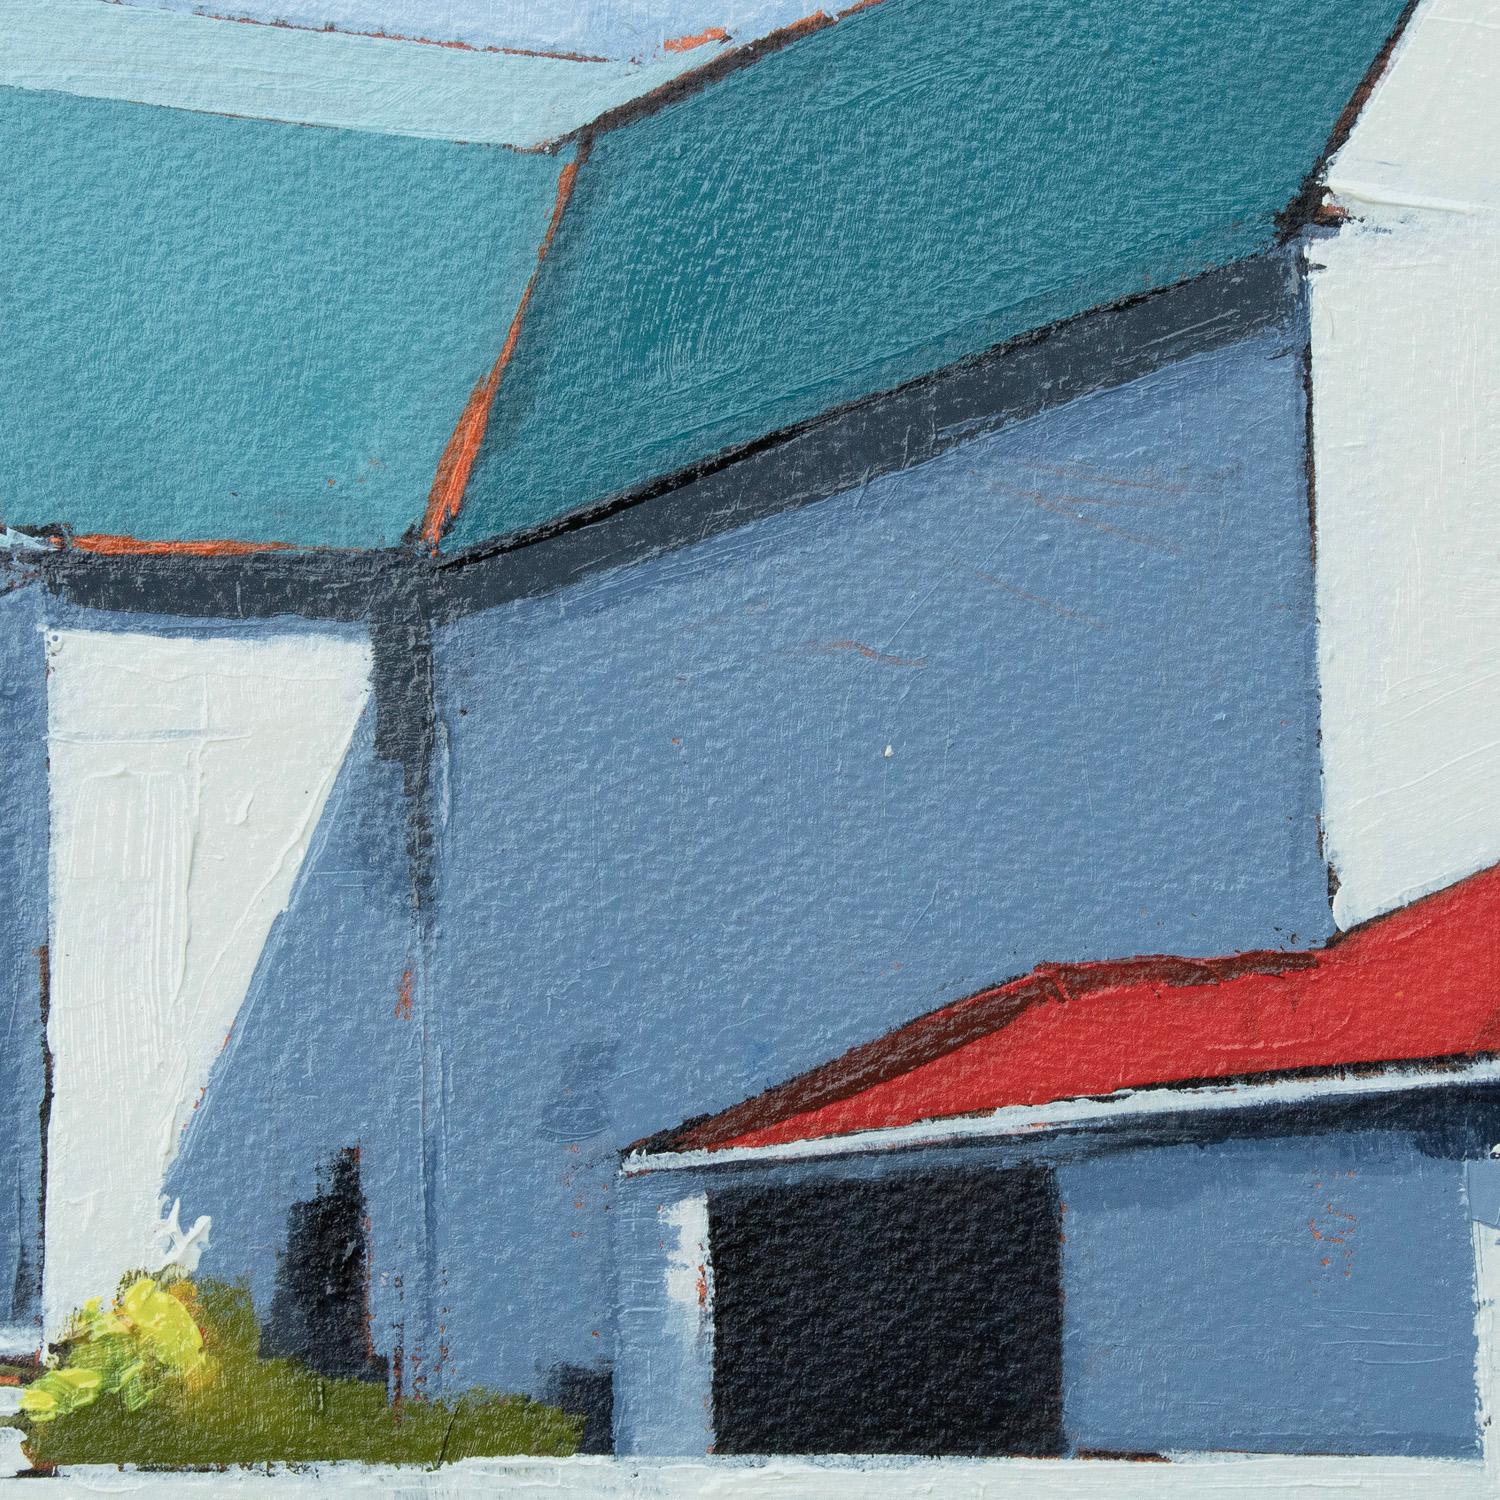 <p>Commentaires de l'artiste<br>L'artiste Ruth LAGU présente une grange ensoleillée par une journée claire et sans nuages. Inspirée par les formes et les motifs du bâtiment, Ruth attire l'attention du spectateur sur ses détails. Elle capture le